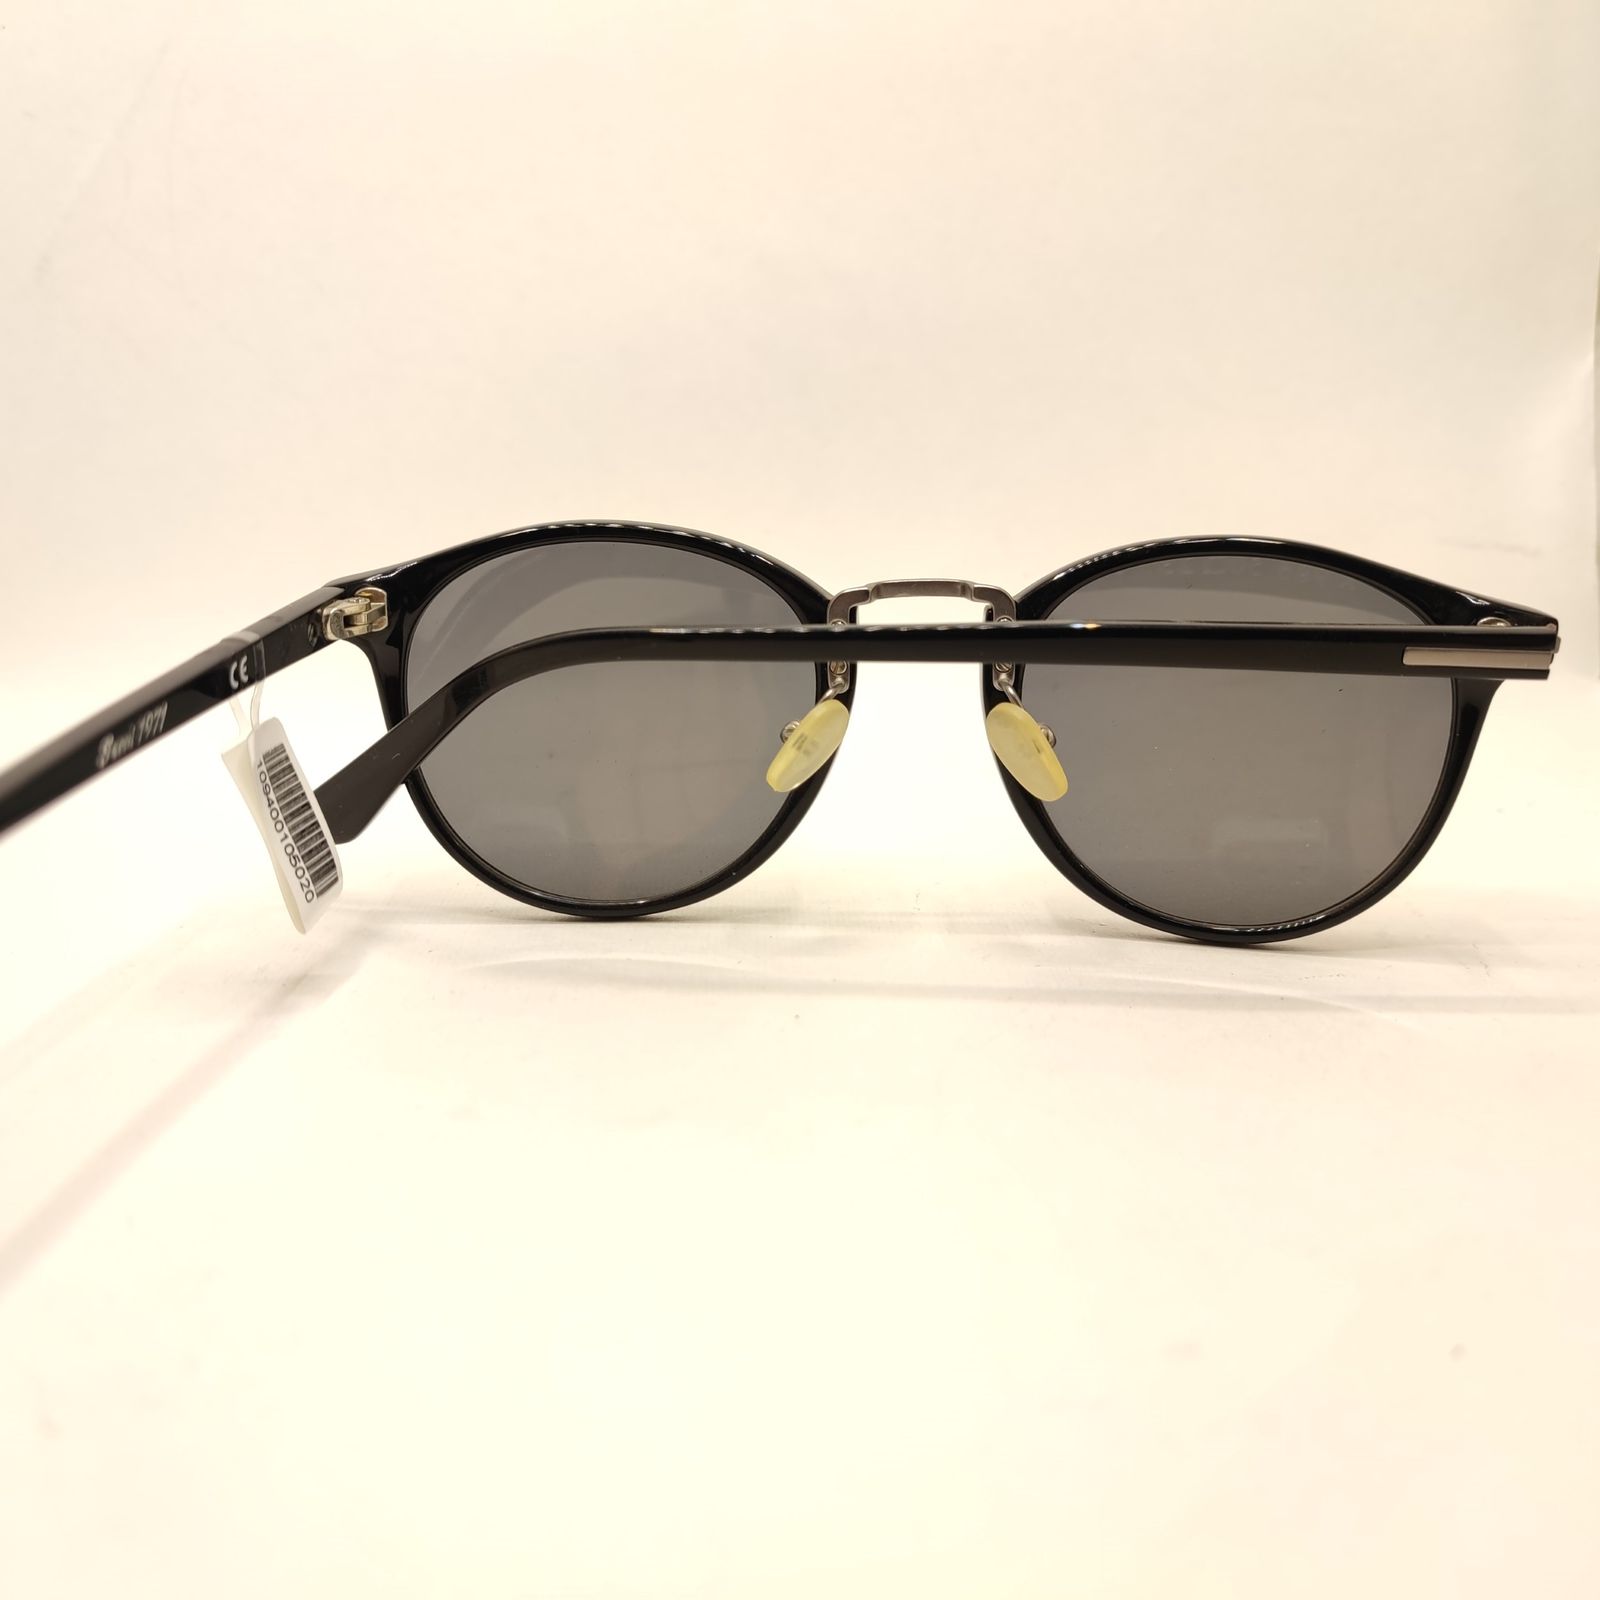 عینک آفتابی کلارک بای تروی کولیزوم مدل K986 -  - 6